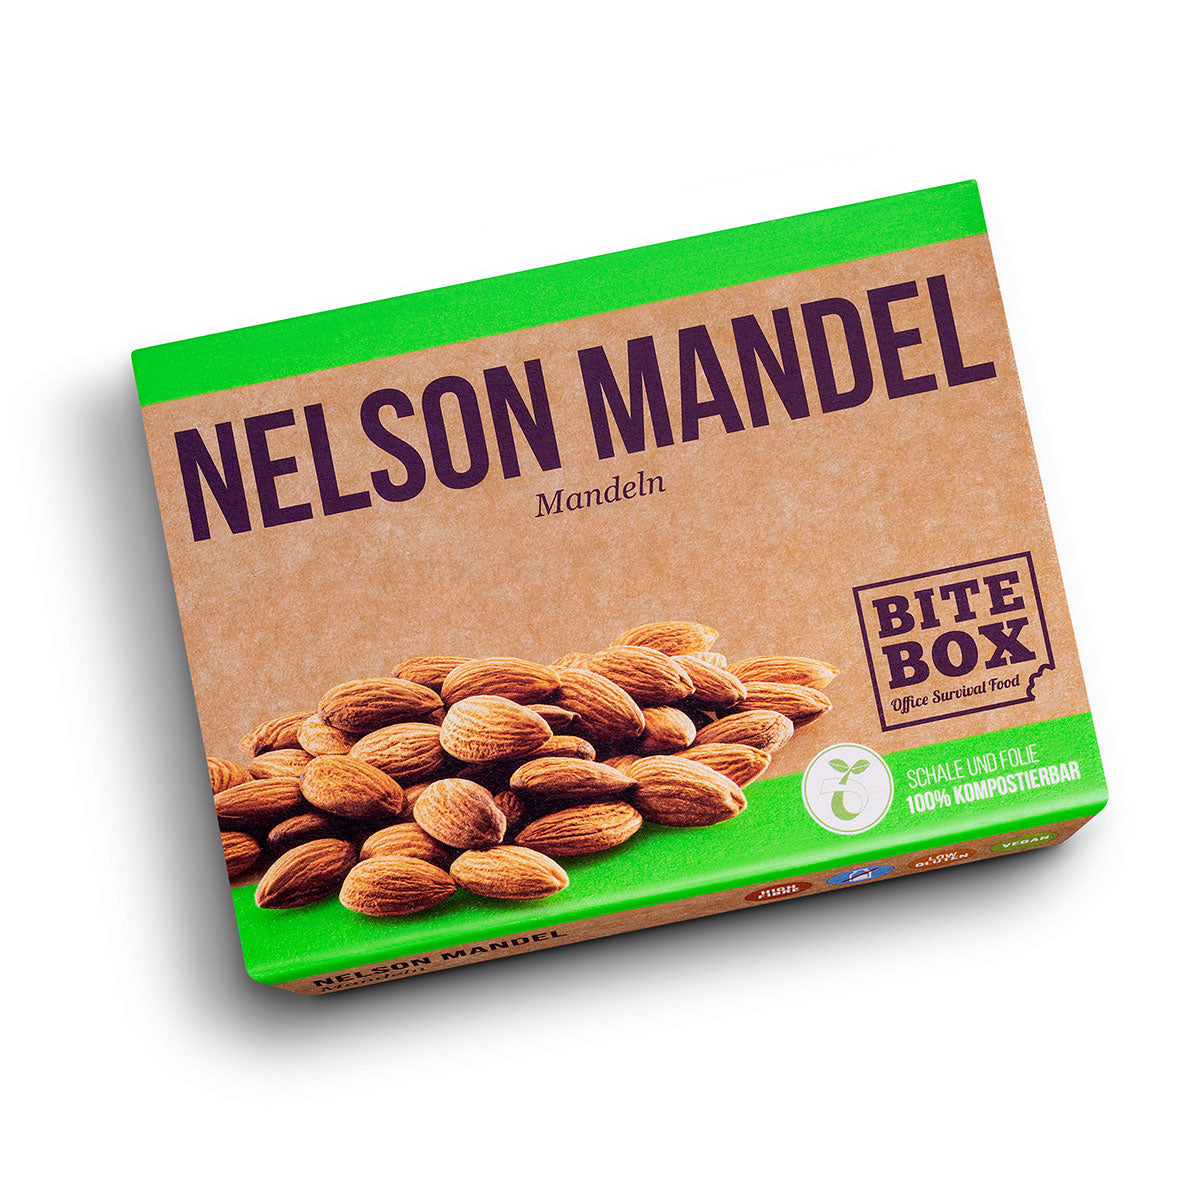 NELSON MANDEL